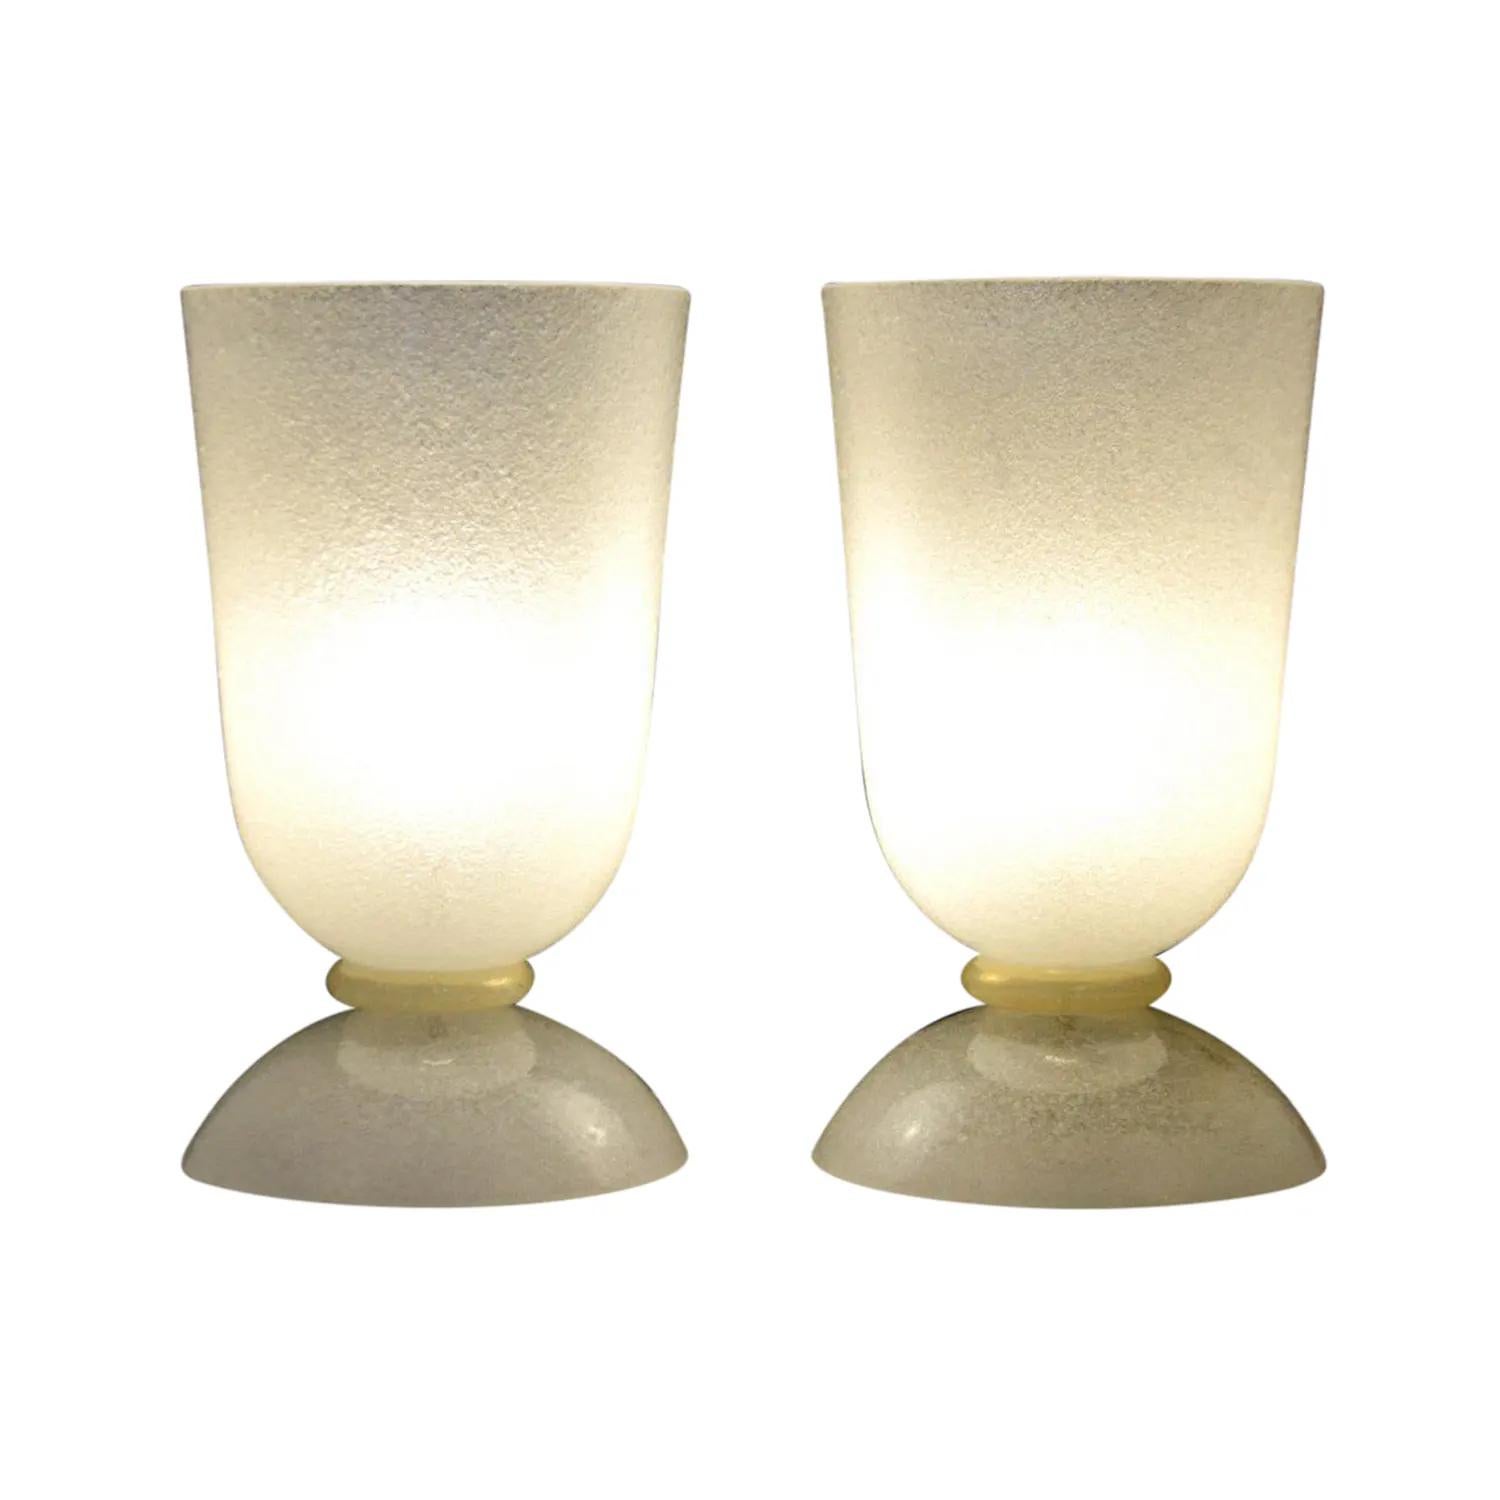 Paire de lampes de table Scavo en verre de Murano soufflé à la bouche, rehaussé d'un anneau jaune-blanc détaillé dans le style d'Alfredo Barbini, en bon état. Les lampes de bureau fumées ont la forme d'un vase et sont dotées d'une douille à une